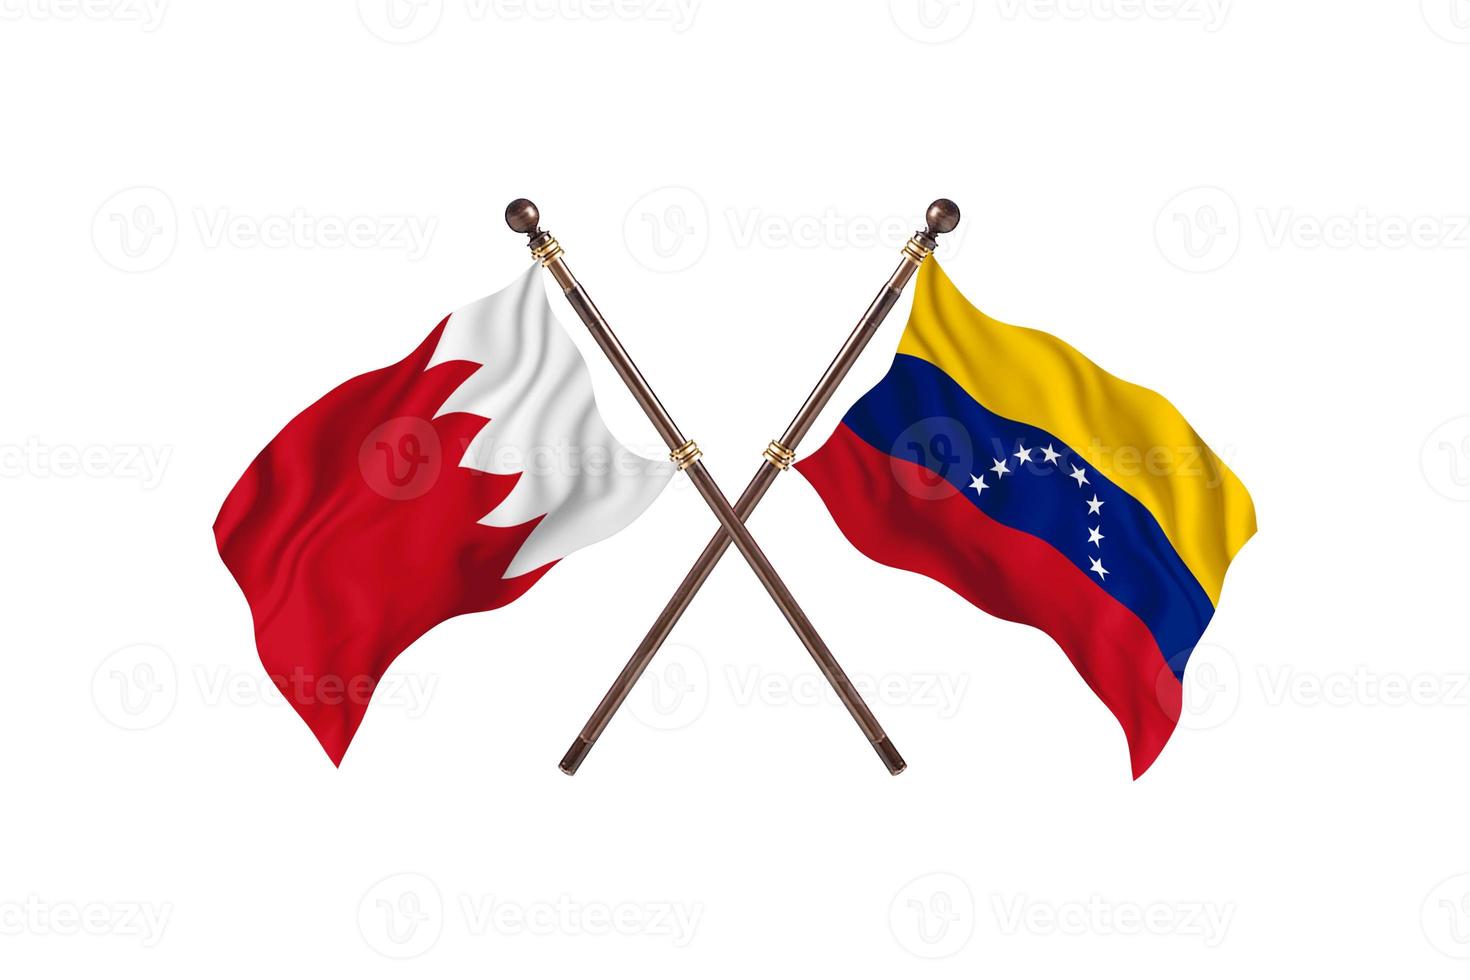 bahreïn contre le venezuela deux drapeaux de pays photo